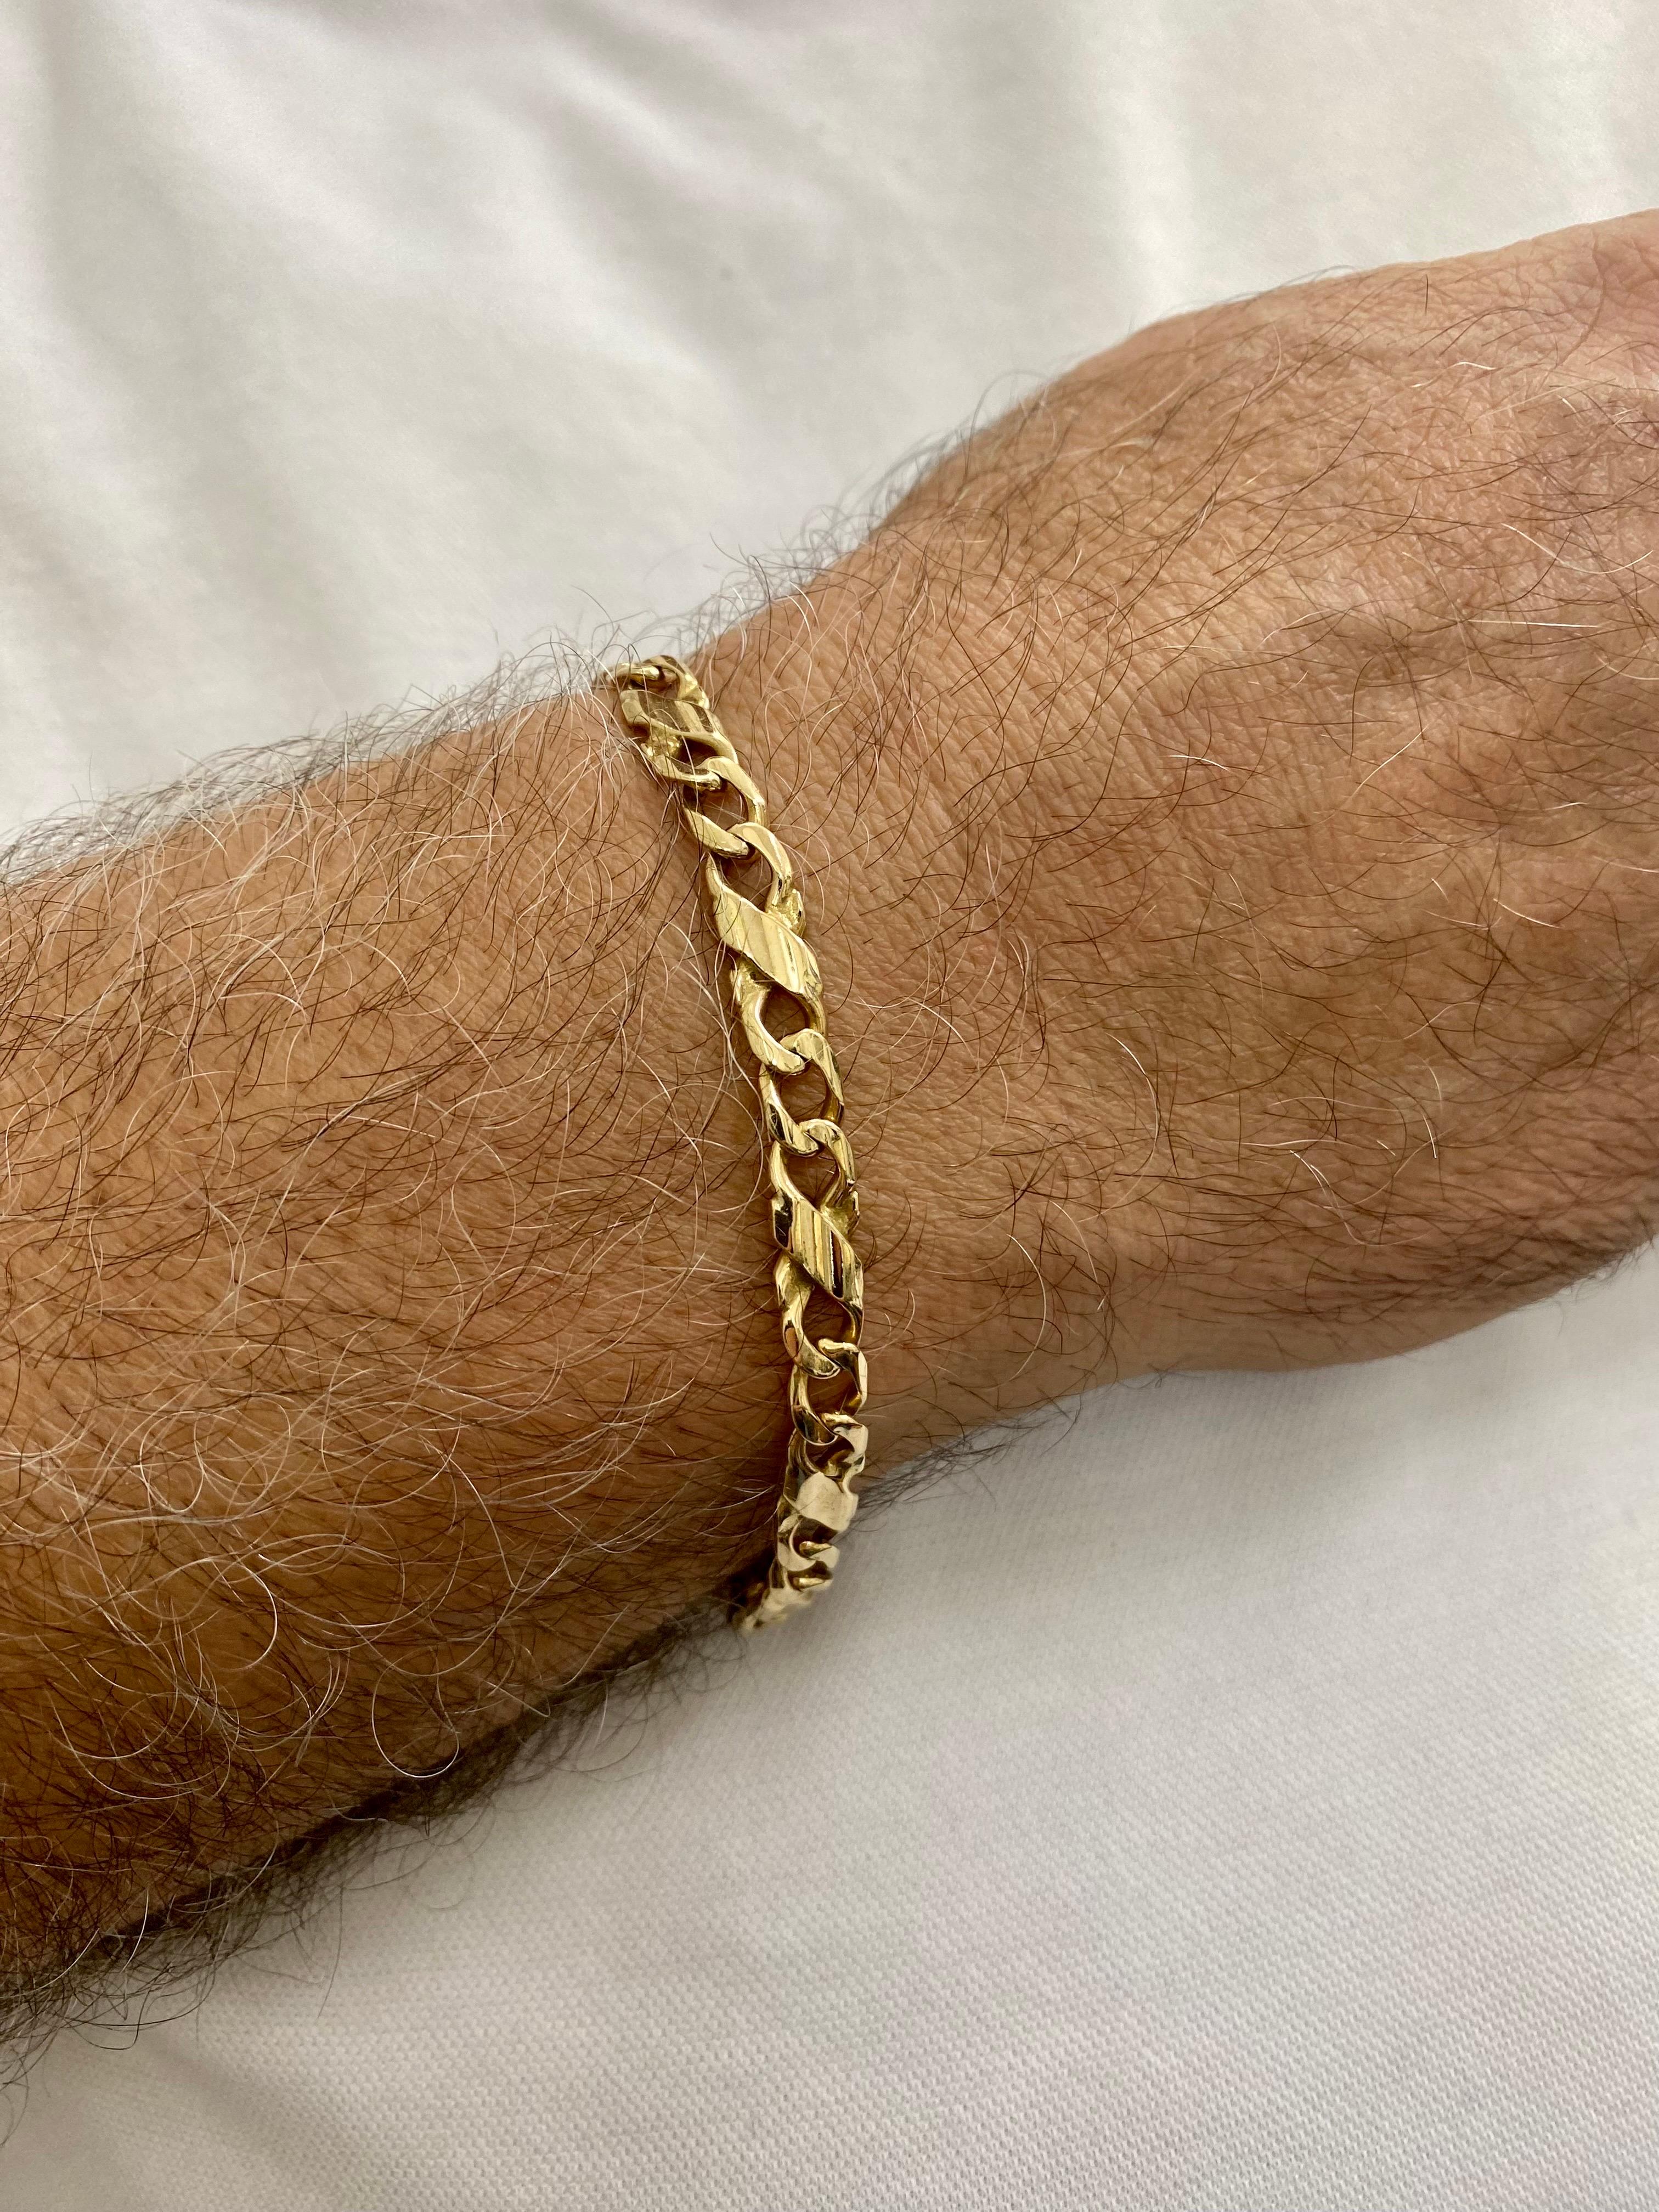 Vintage Hommes 6.5mm Fancy Extended Cuban Curb Link Bracelet 14k Gold. Bracelet très rare fabriqué en Italie. Le bracelet pèse 19,8 g et mesure 8 pouces de long.